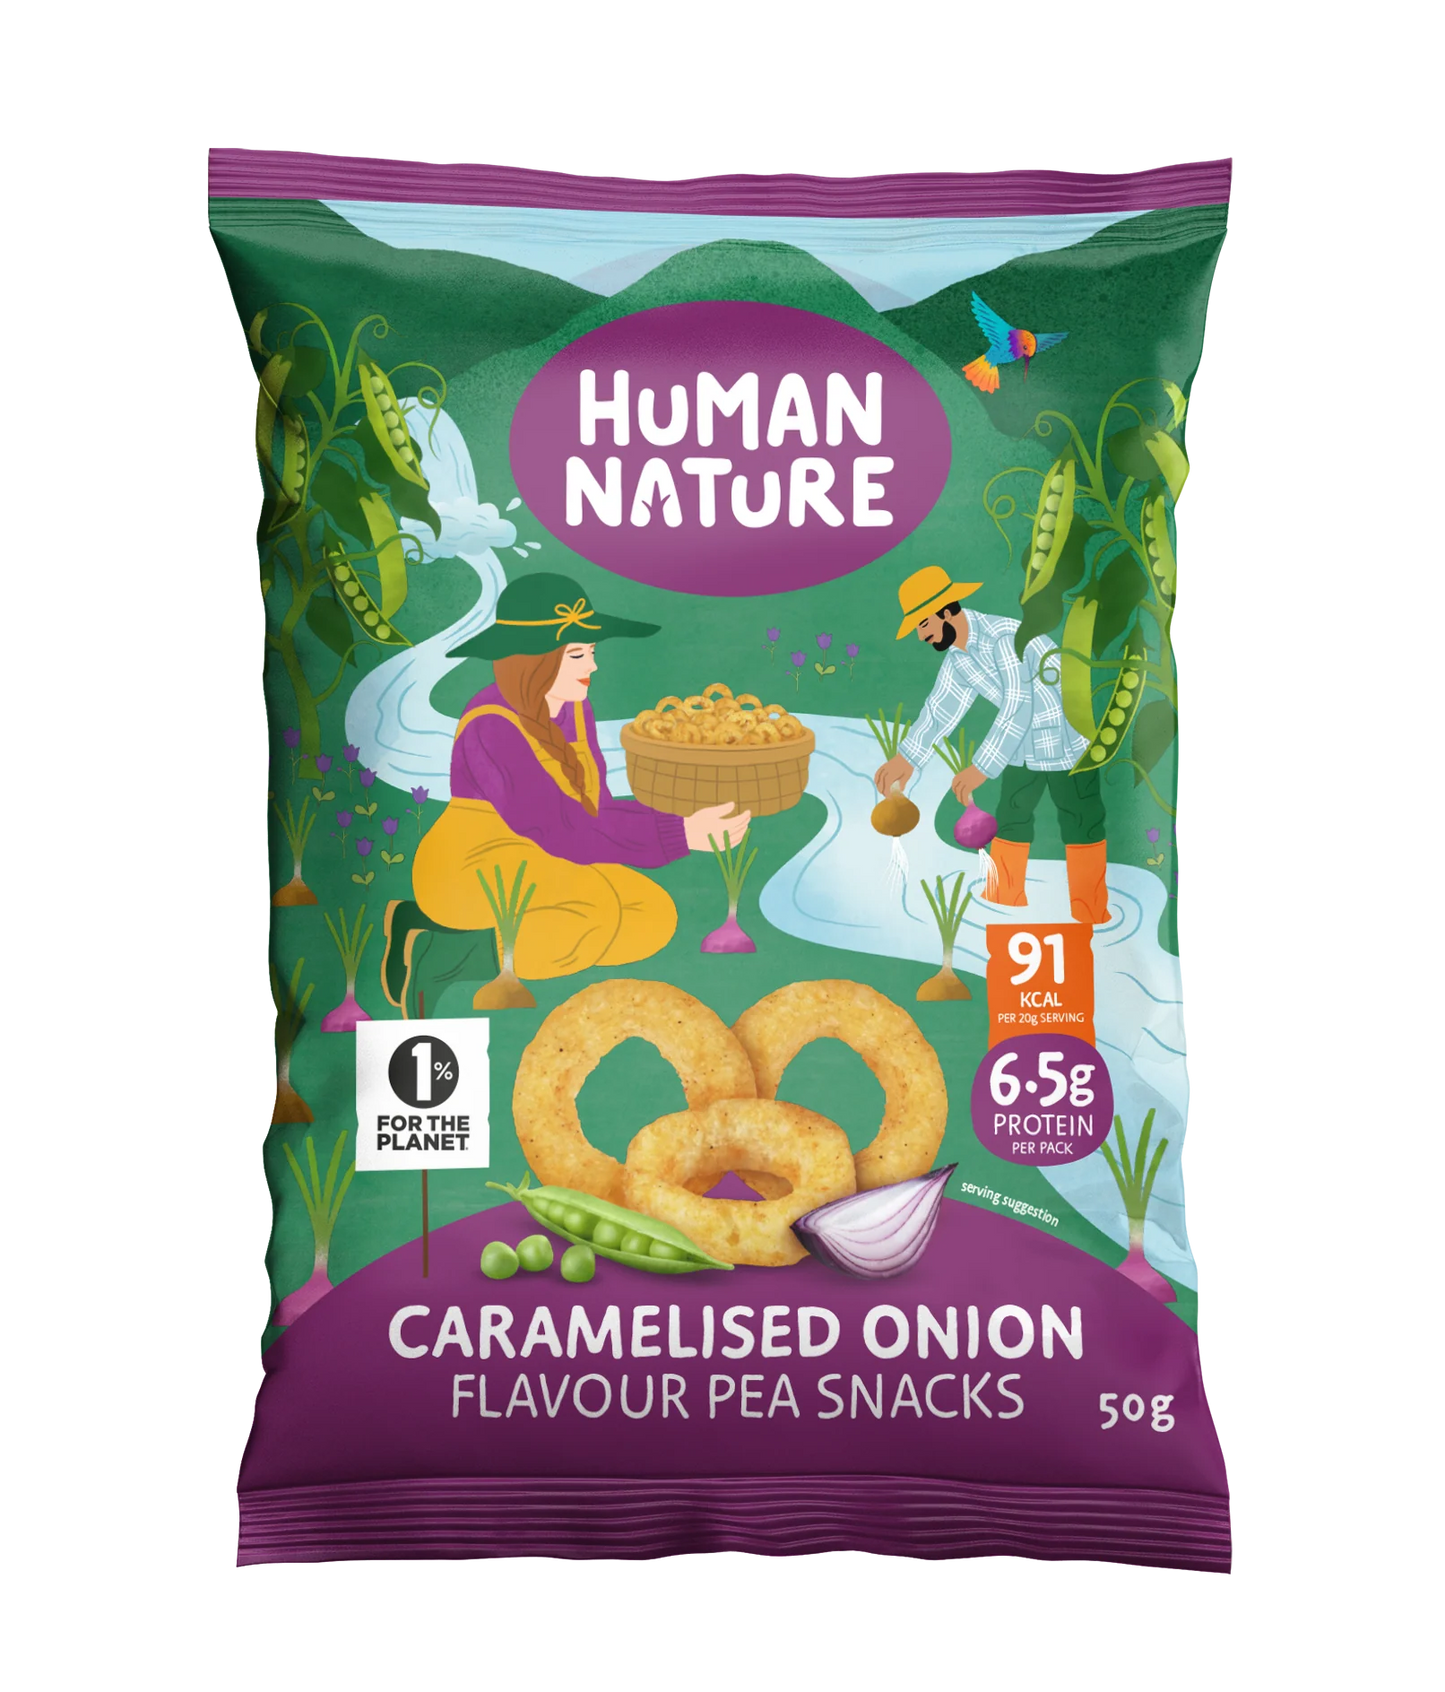 Human Nature Caramelised Onion Pea Snacks X